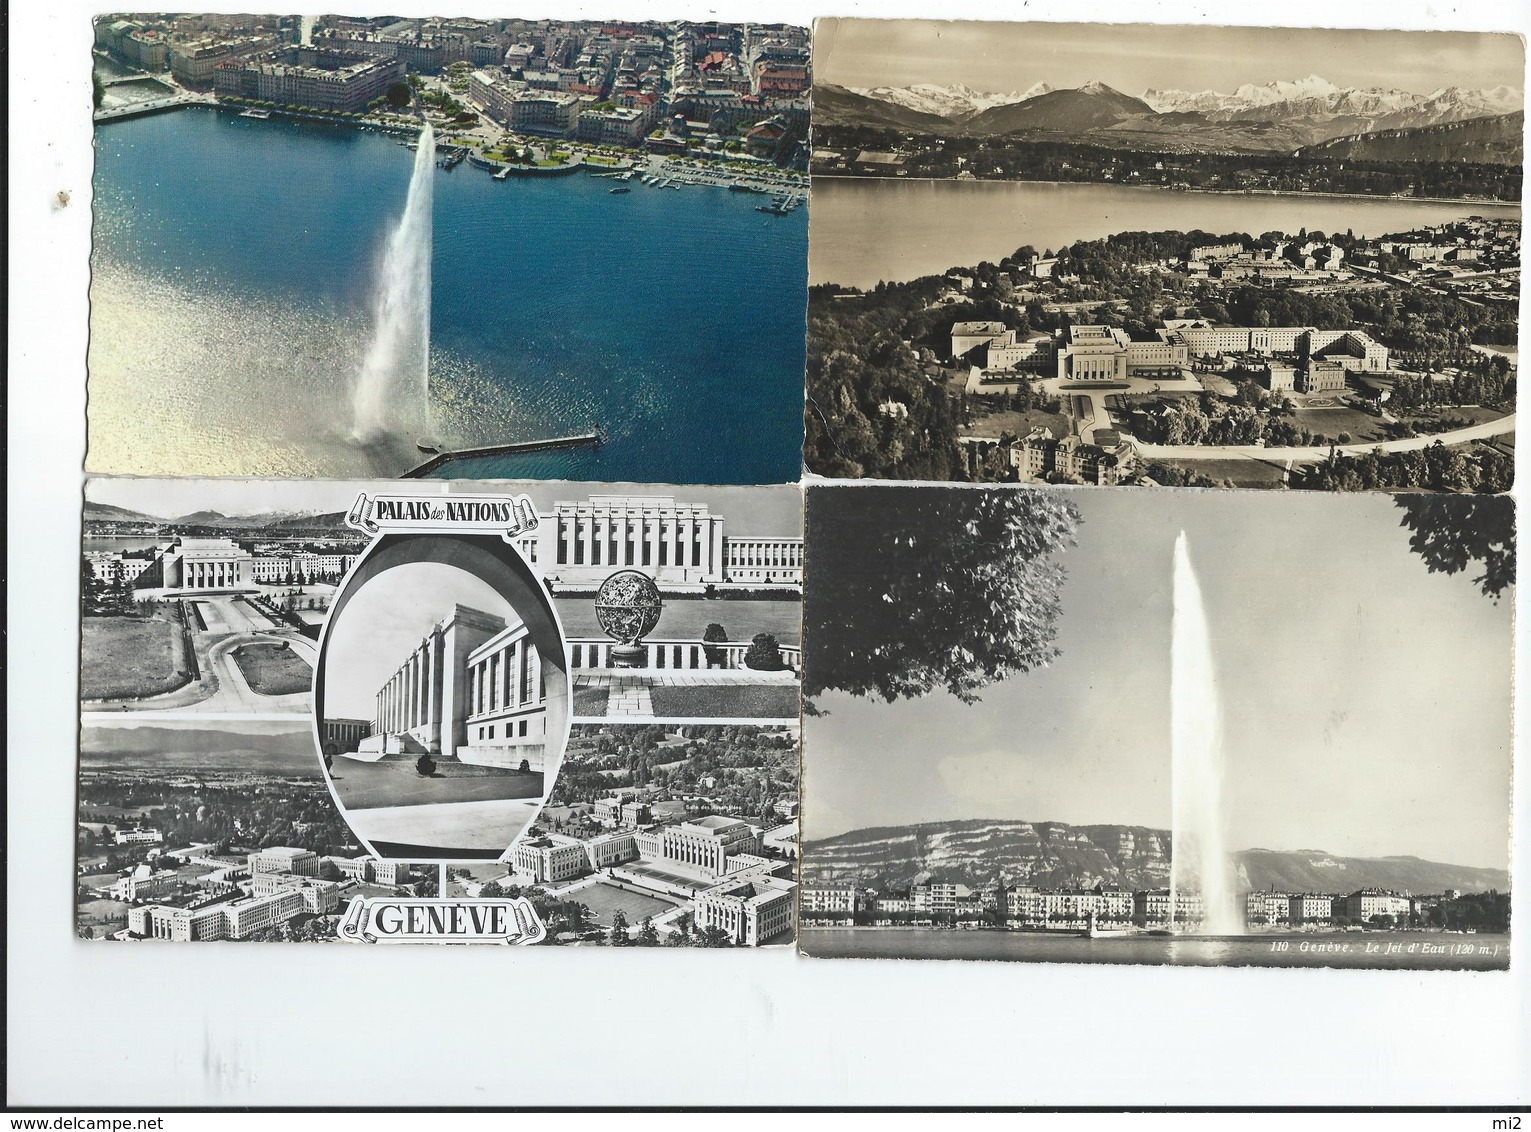 suisse geneve lac léman lot de 64 cartes tout scanné toutes époques